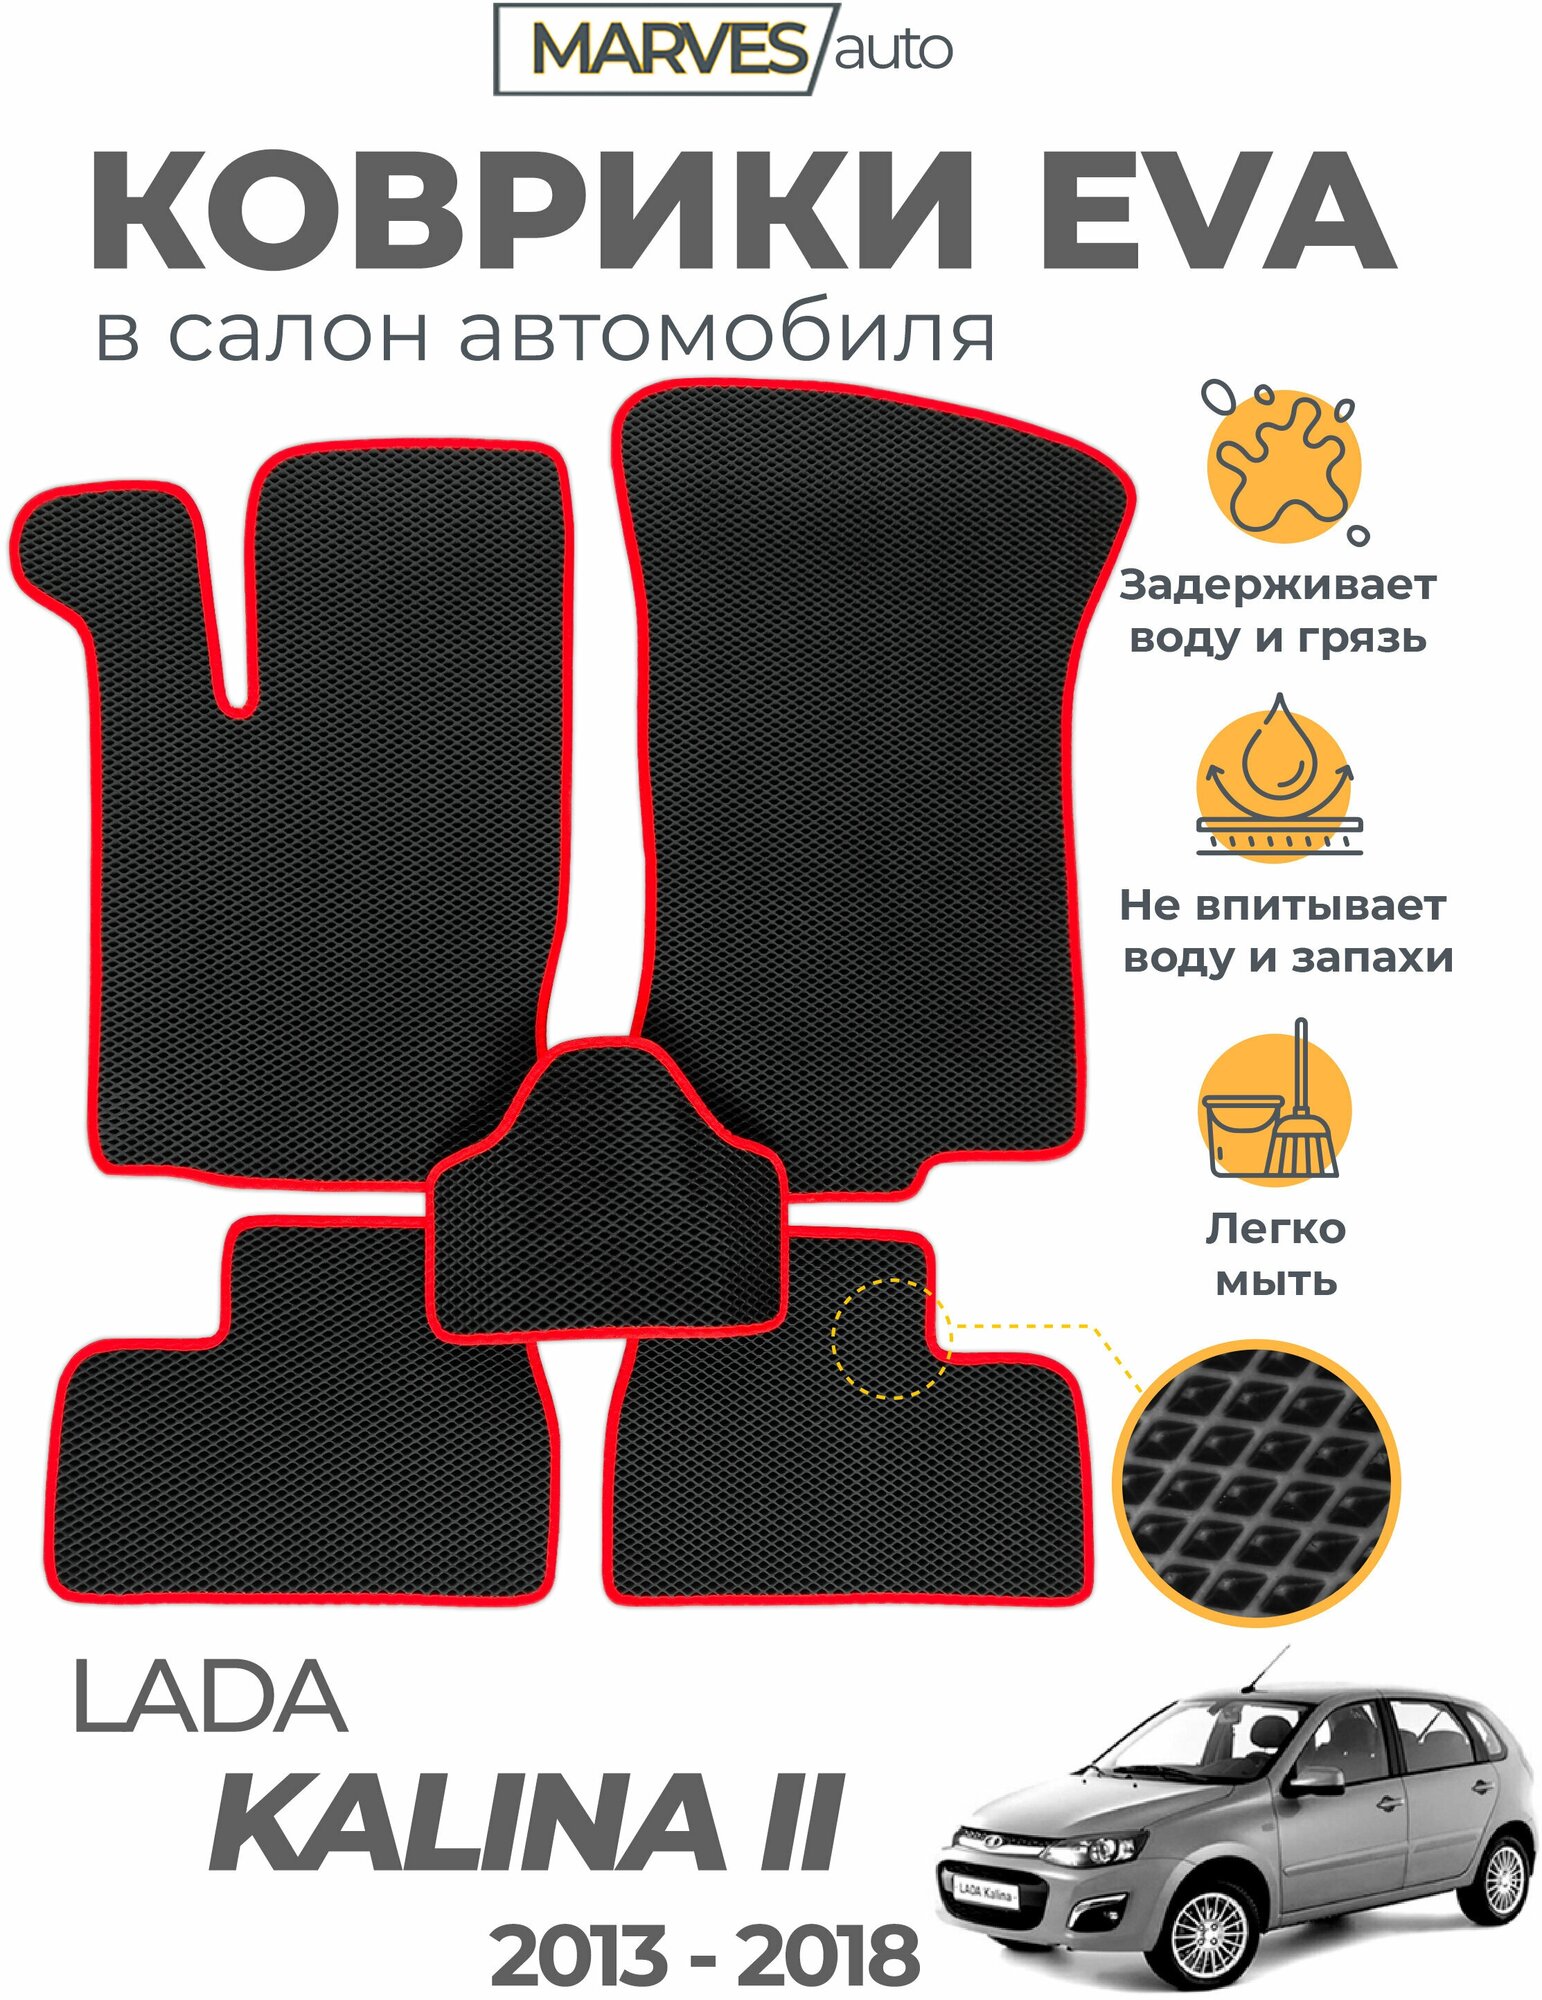 Коврики EVA (ЭВА, ЕВА) в салон автомобиля Лада Калина II 2014-2018, ВАЗ-2192, 2194, комплект 5 шт, черный ромб/красный кант